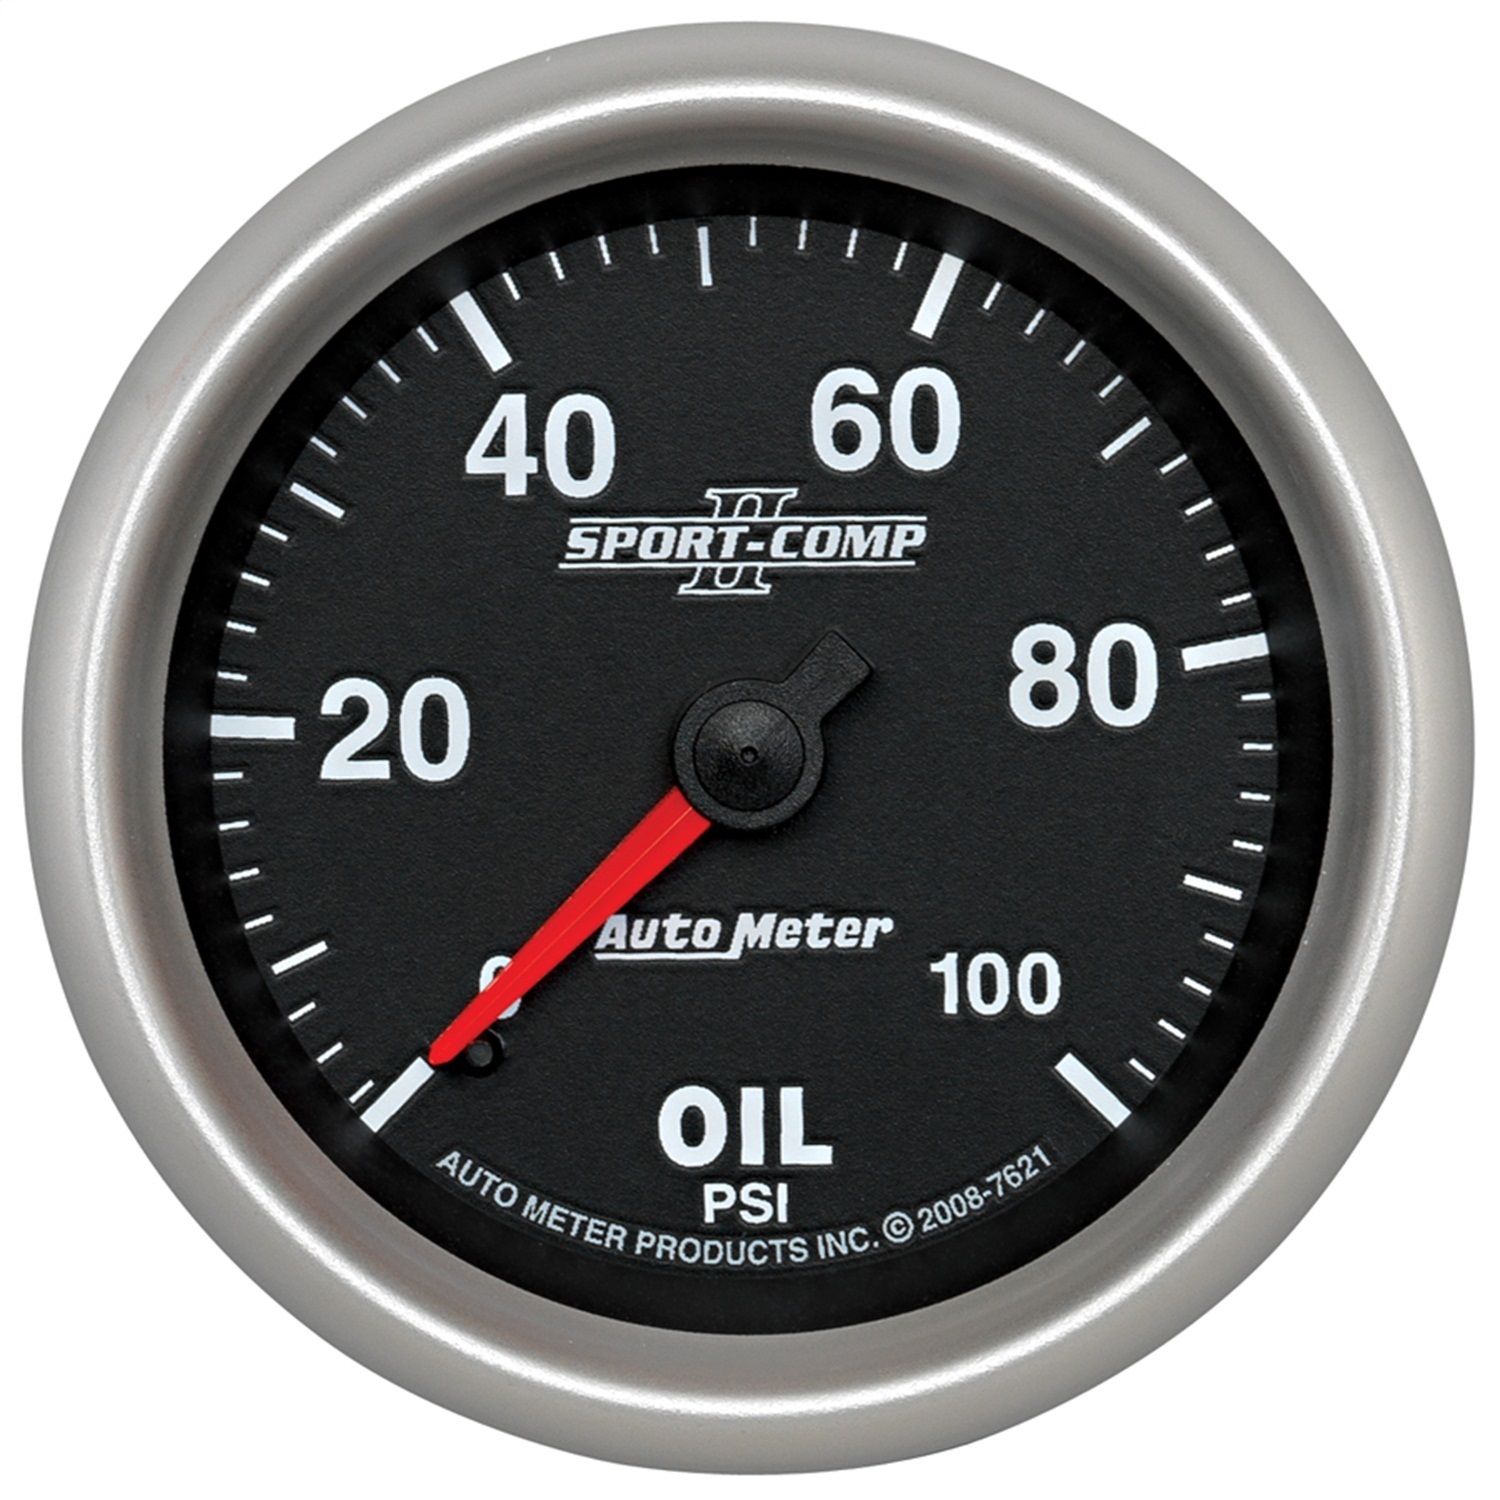 Auto Meter Auto Meter 7621 Sport-Comp II; Mechanical Oil Pressure Gauge